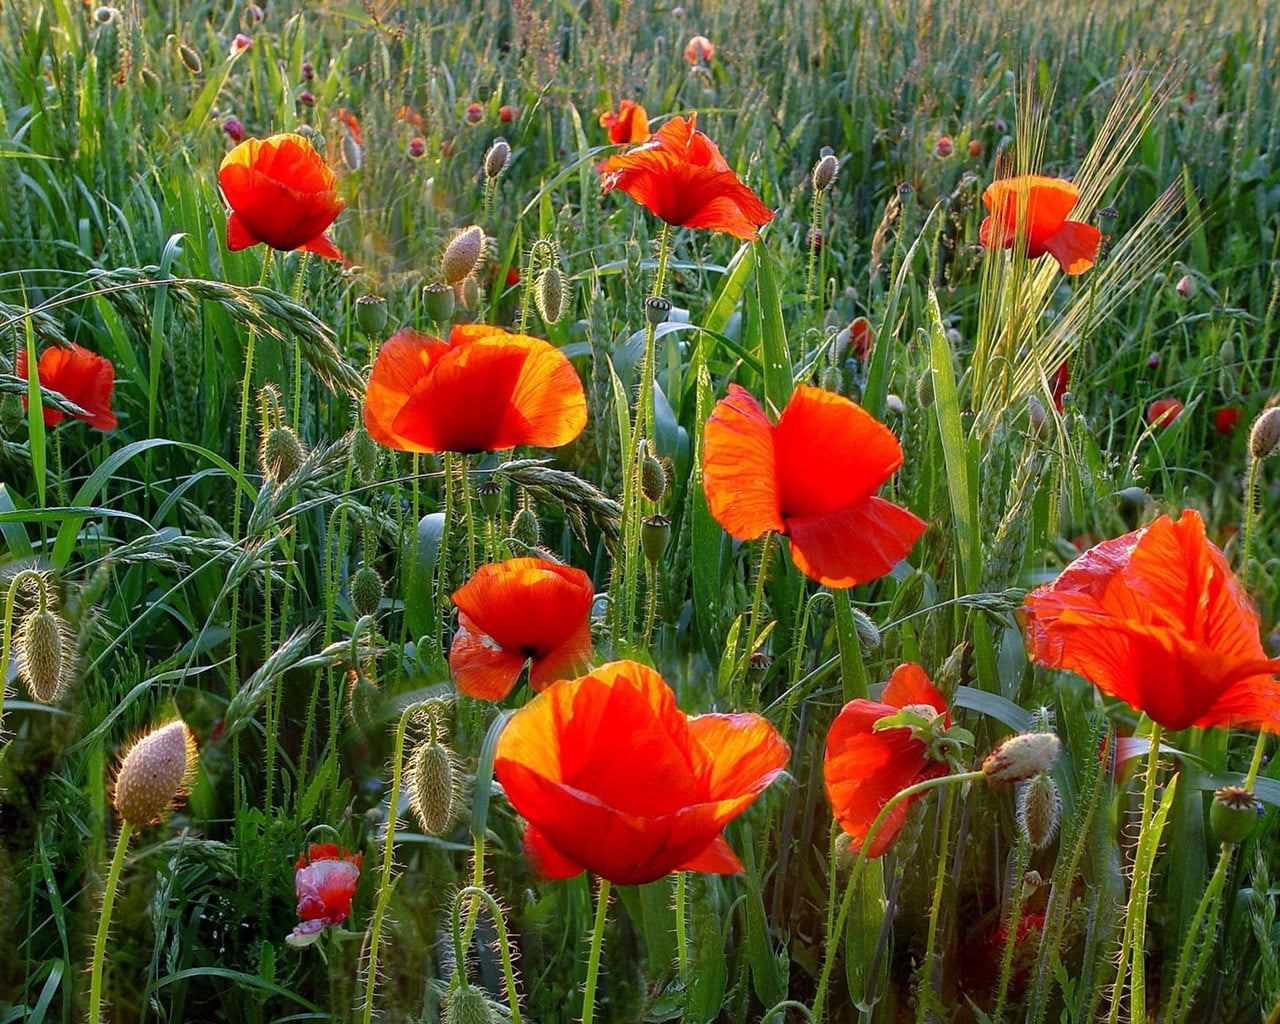 red Shirley Poppy flower field